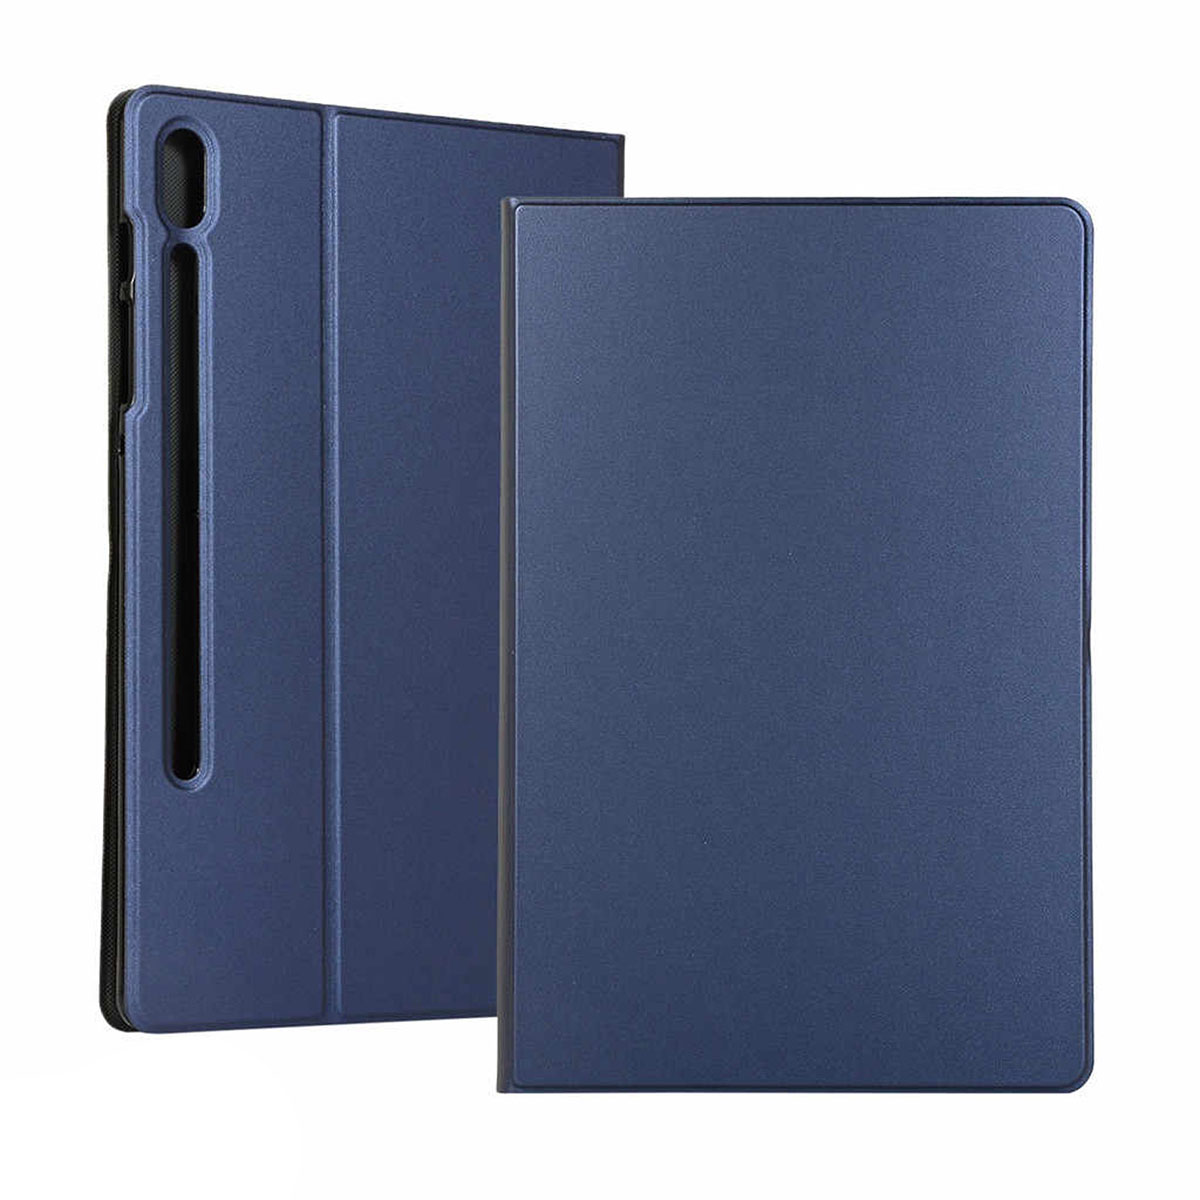 Чехол книжка Ouhaobin для SAMSUNG Galaxy Tab S6 (SM-T860, SM-T865), диагональ 10.5", цвет синий